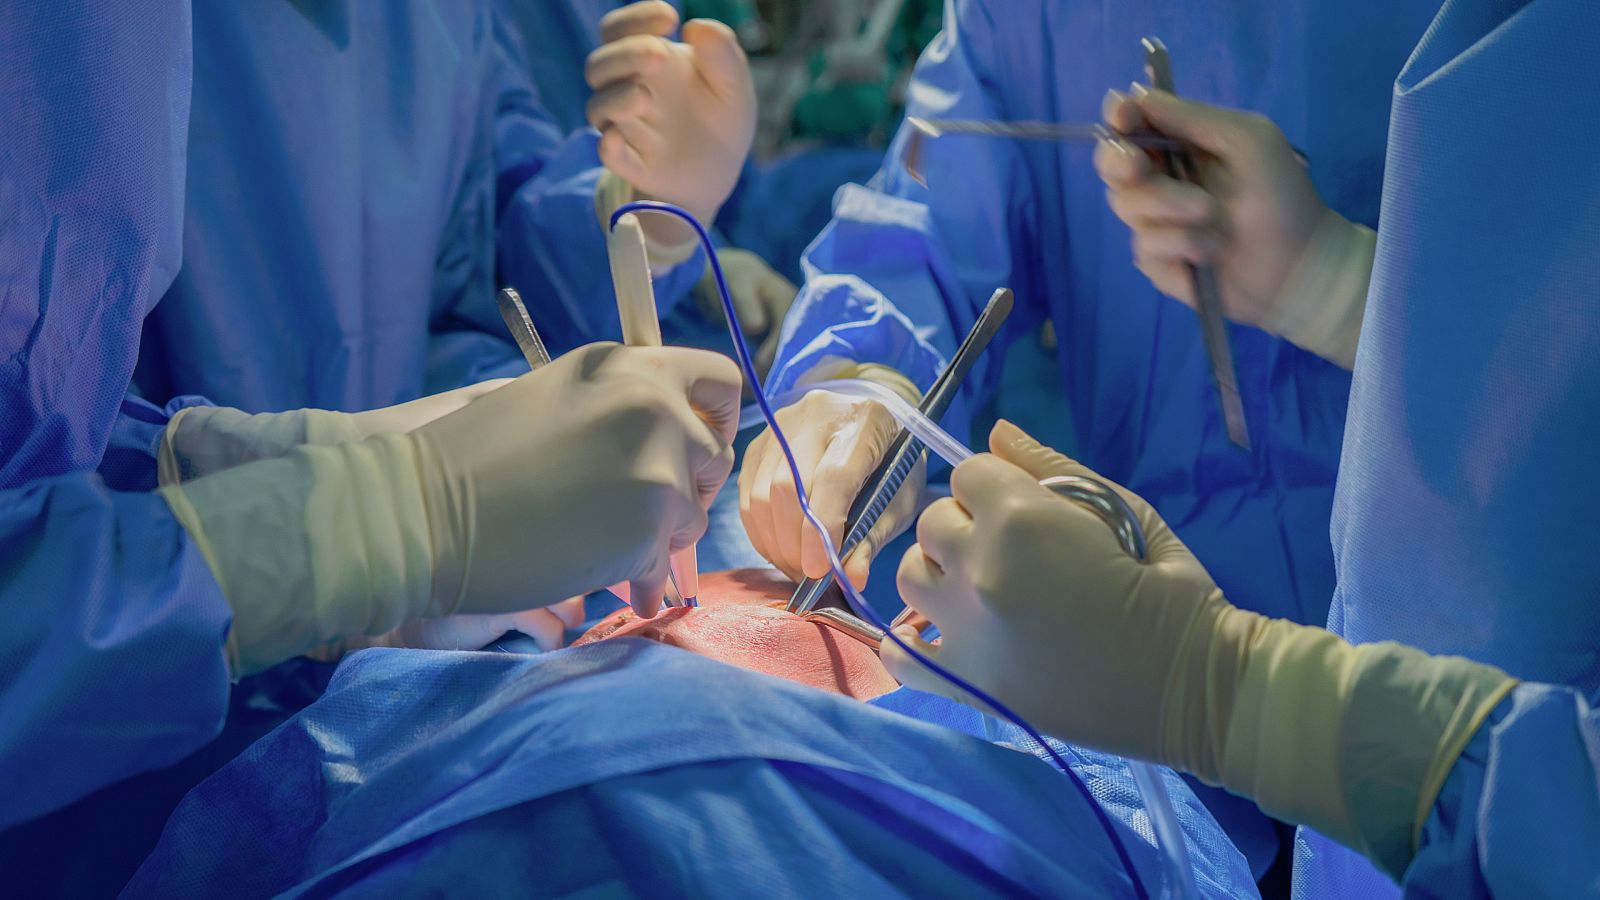 El Hospital Puerta de Hierro Majadahonda ha realizado, por primera vez en España, un trasplante de corazón procedente de un fallecido por parada cardiorrespiratoria, que además se ha hecho con un procedimiento innovador que permite recuperar otros ór